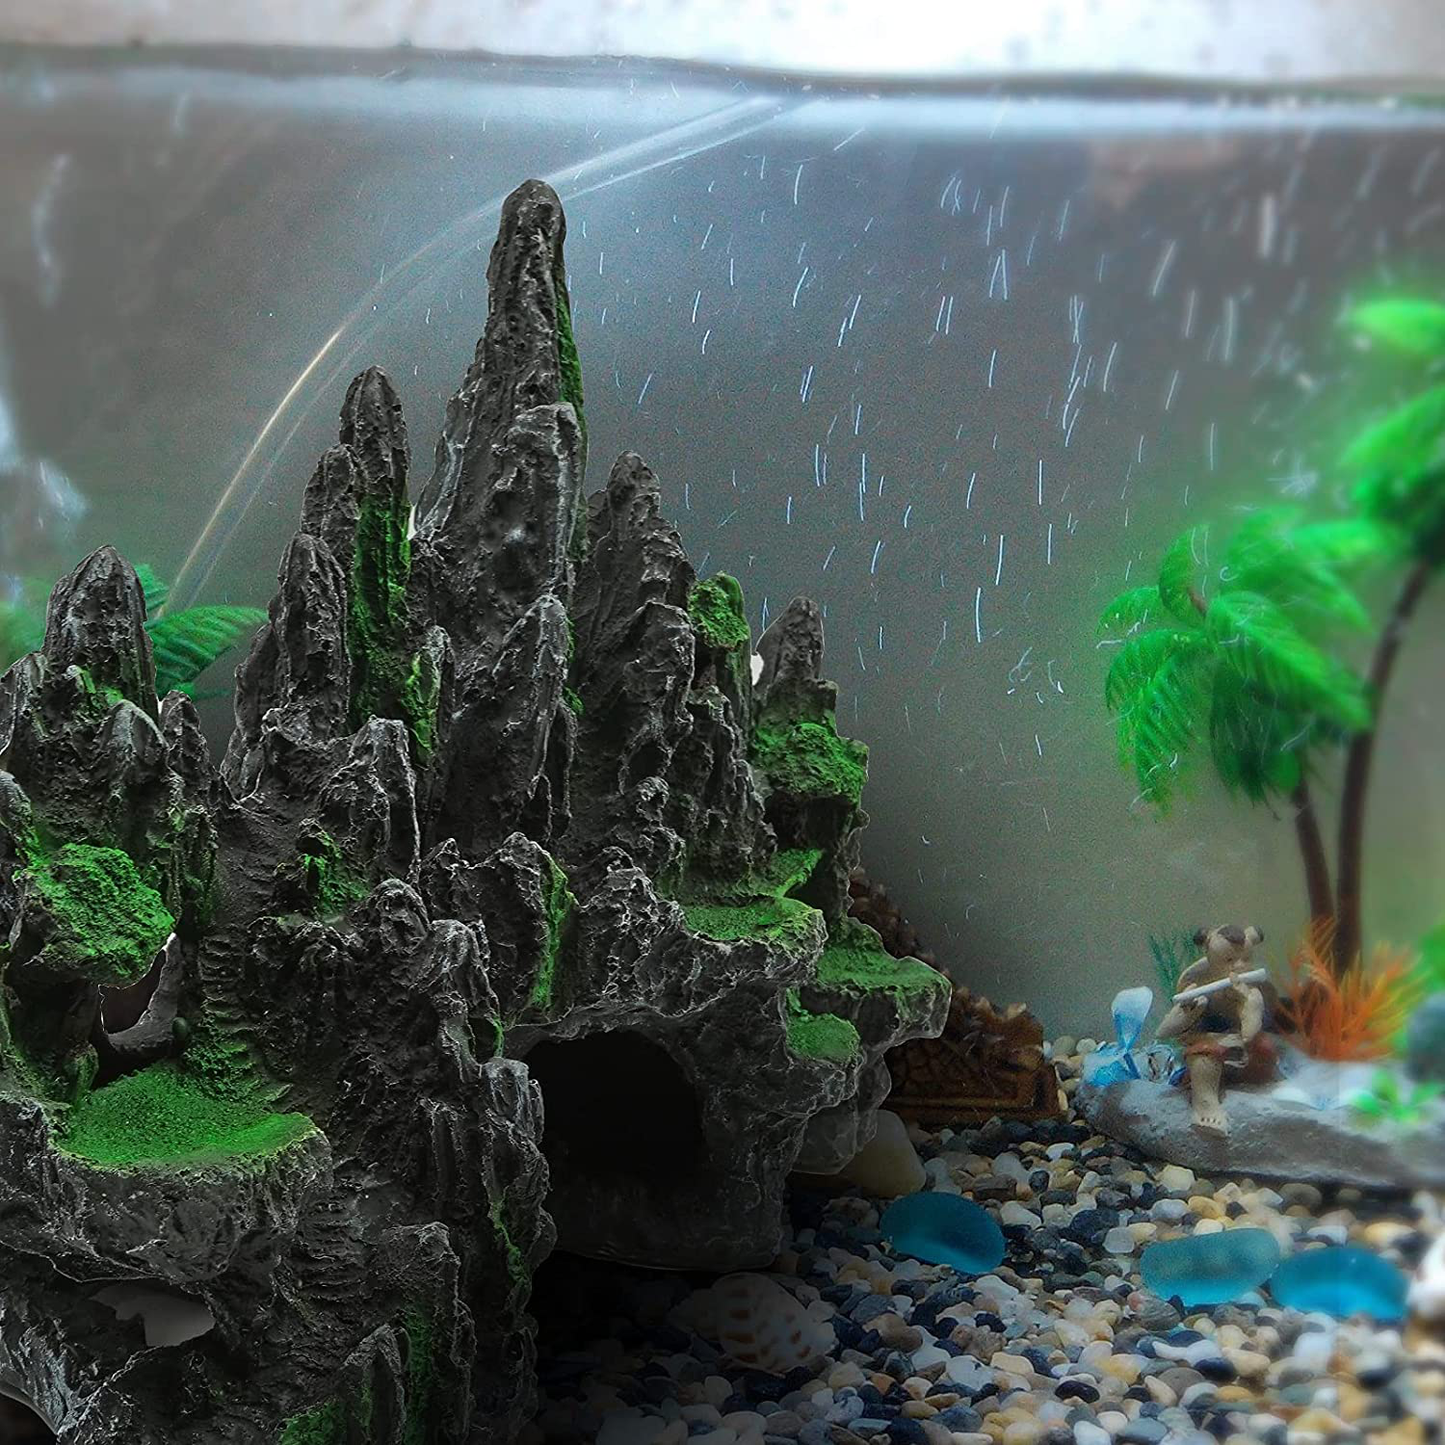 Aquarium Decorations & Backgrounds | Discount Fish Tank Supplies & Ornaments  | Air Pump, Driftwood, Plants, Rocks